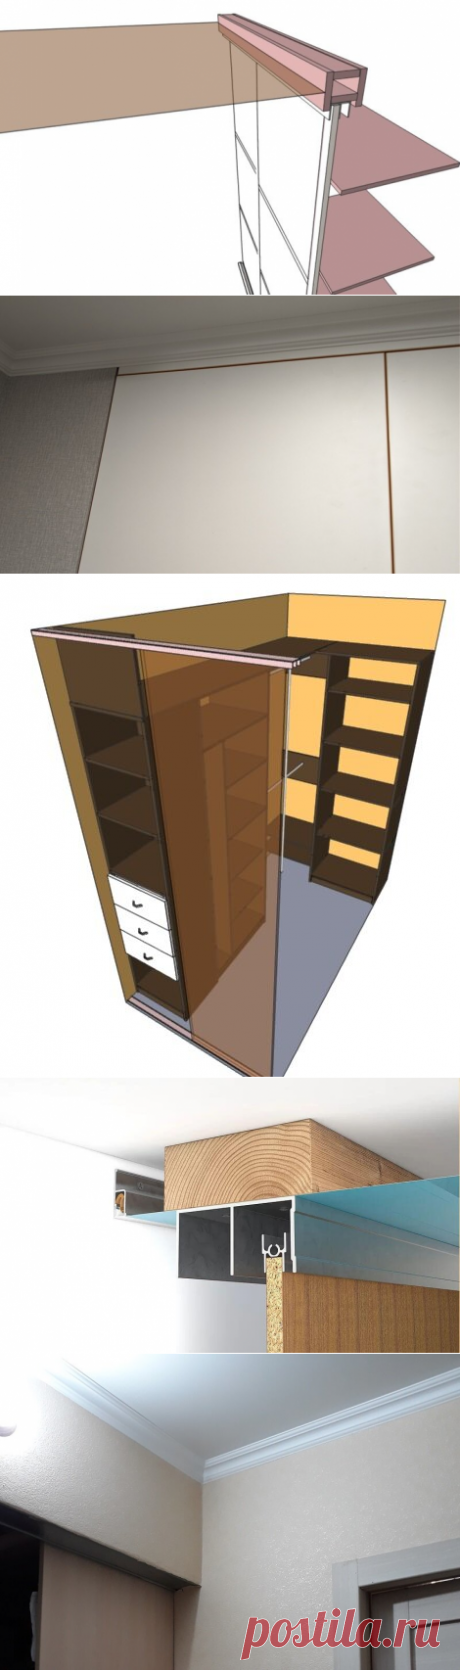 Что раньше устанавливать - шкаф-купе или натяжной потолок? | Мебель своими руками | Яндекс Дзен